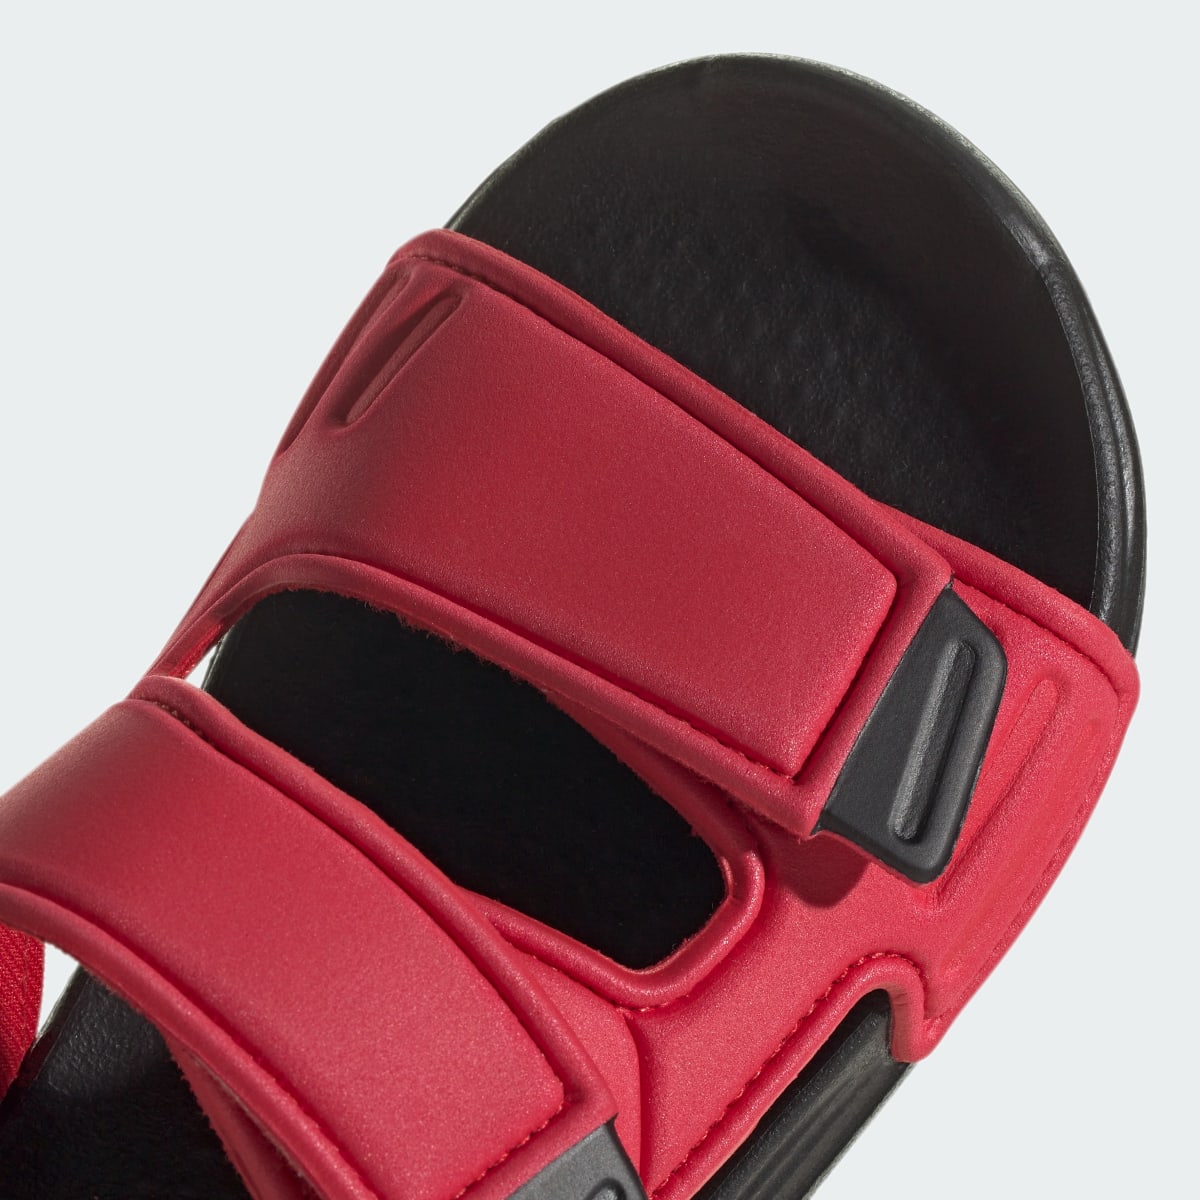 Adidas Altaswim Sandals. 10